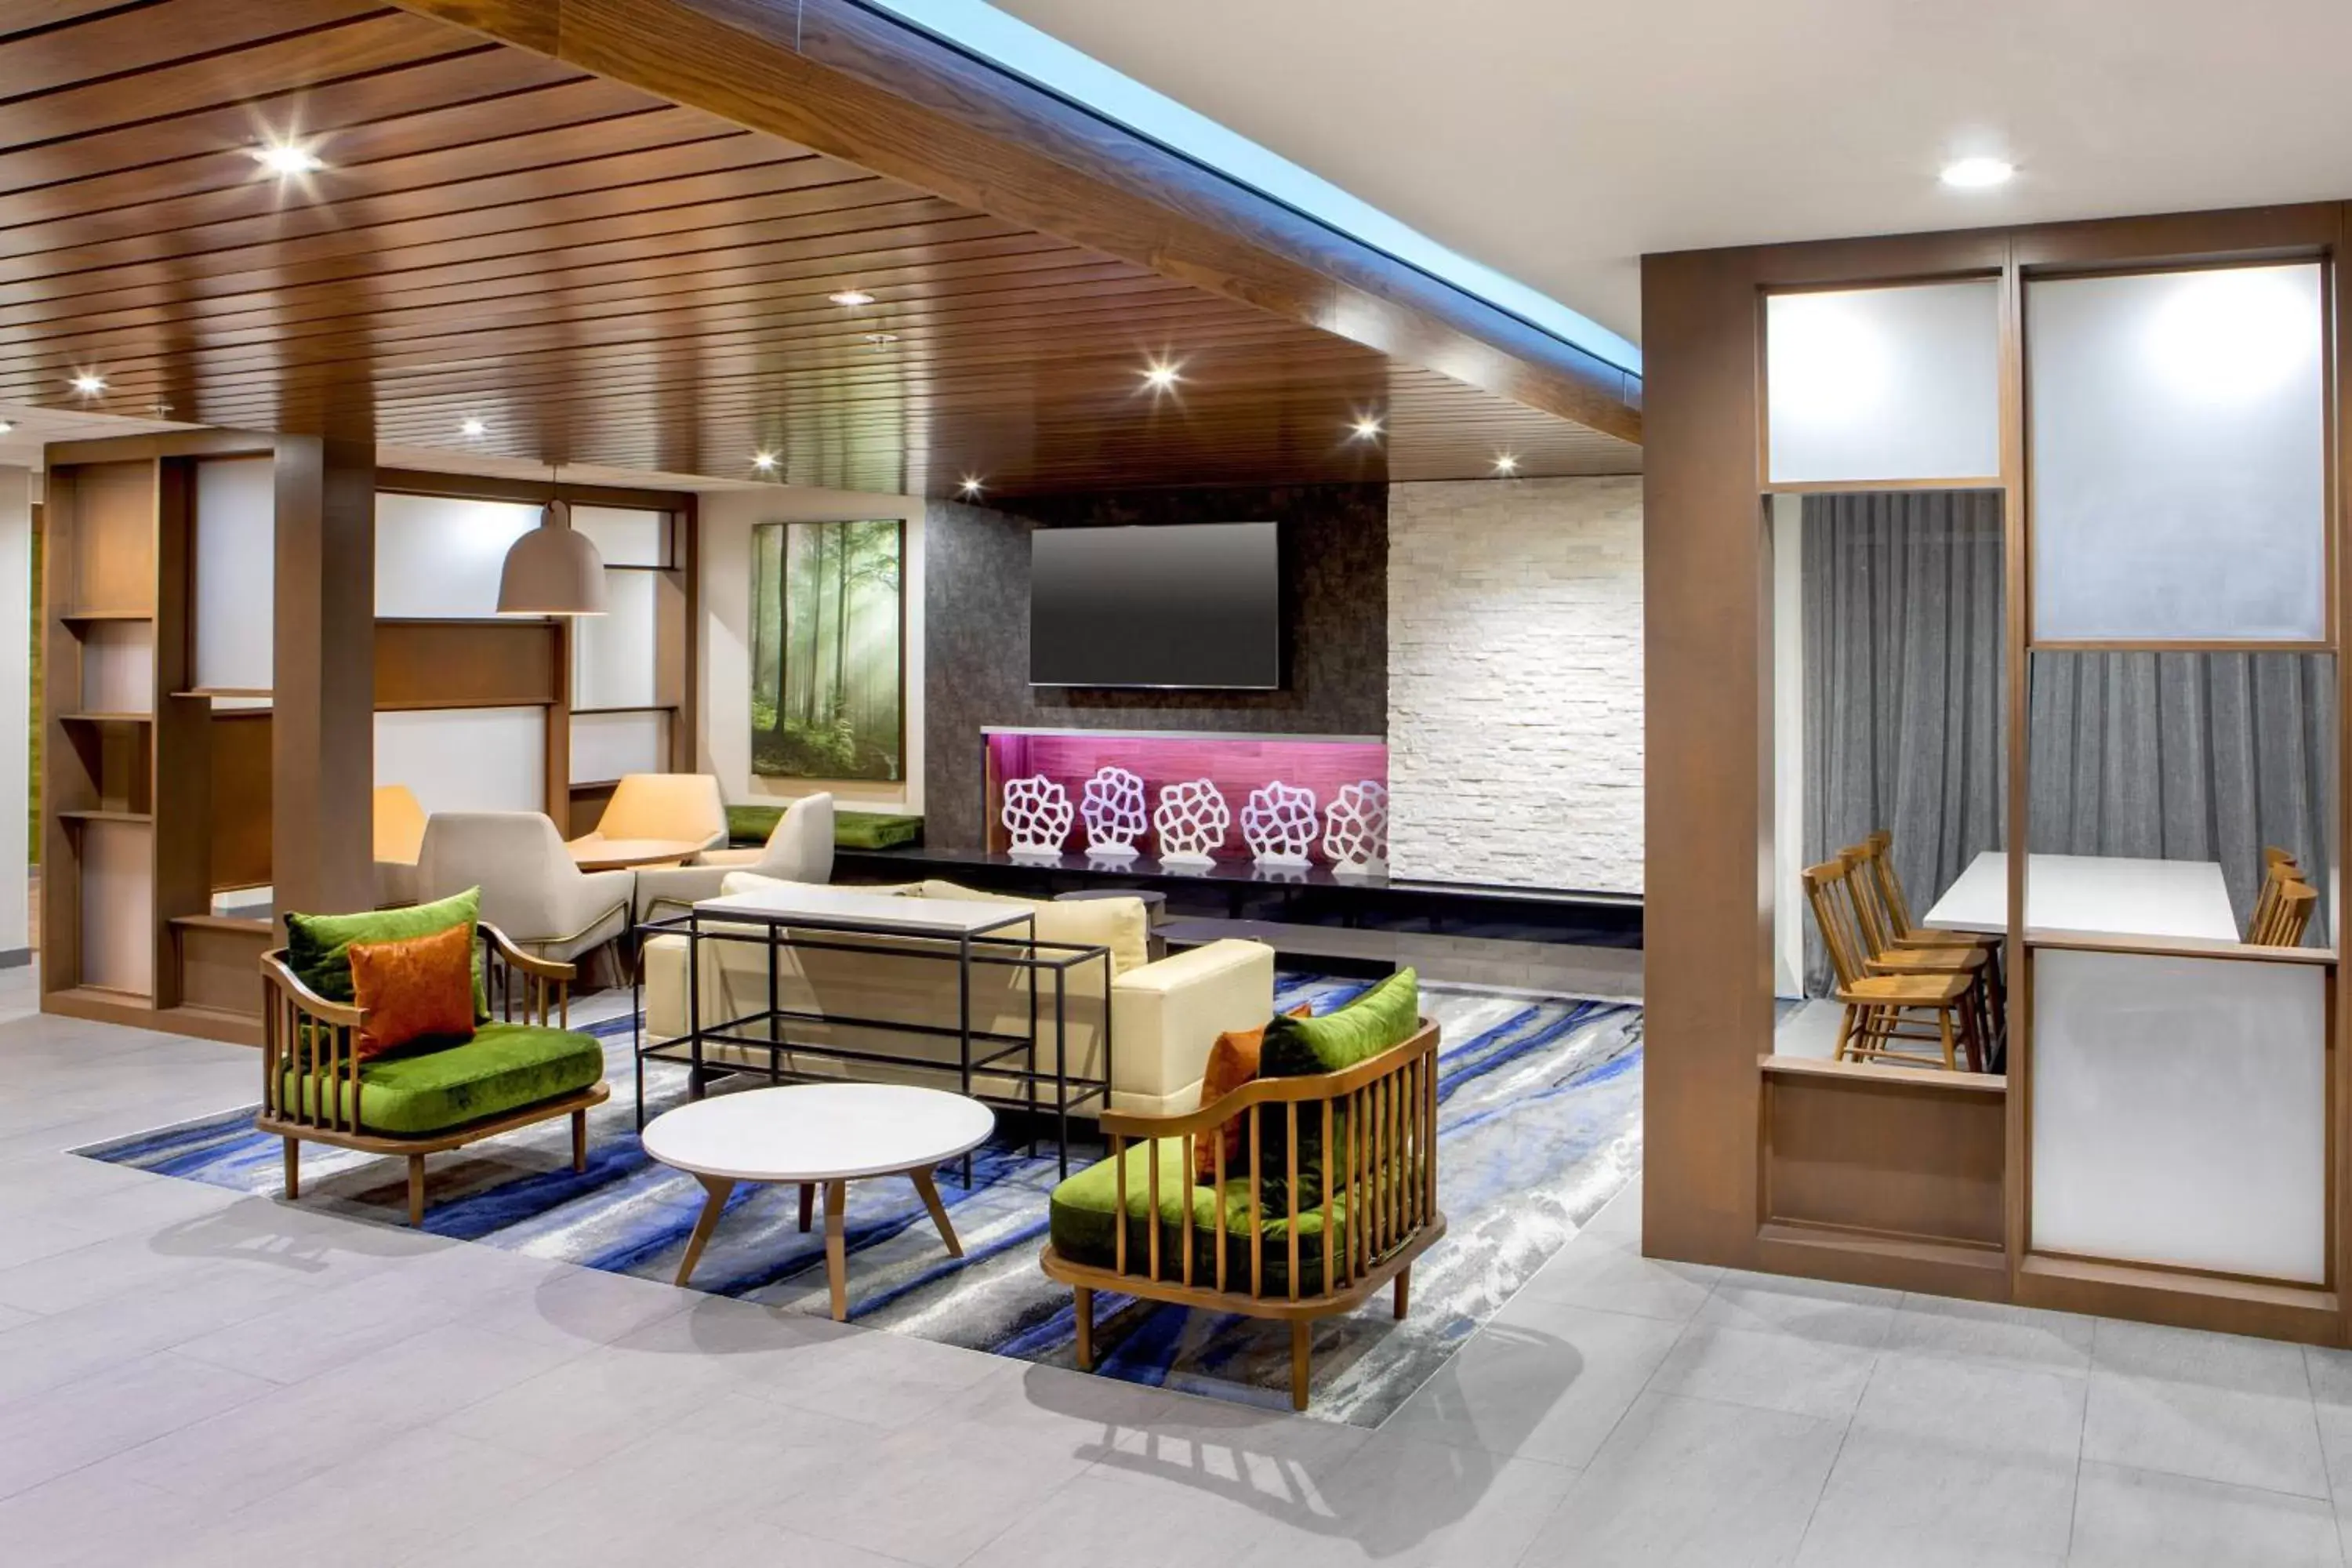 Lobby or reception in Fairfield Inn & Suites by Marriott McPherson